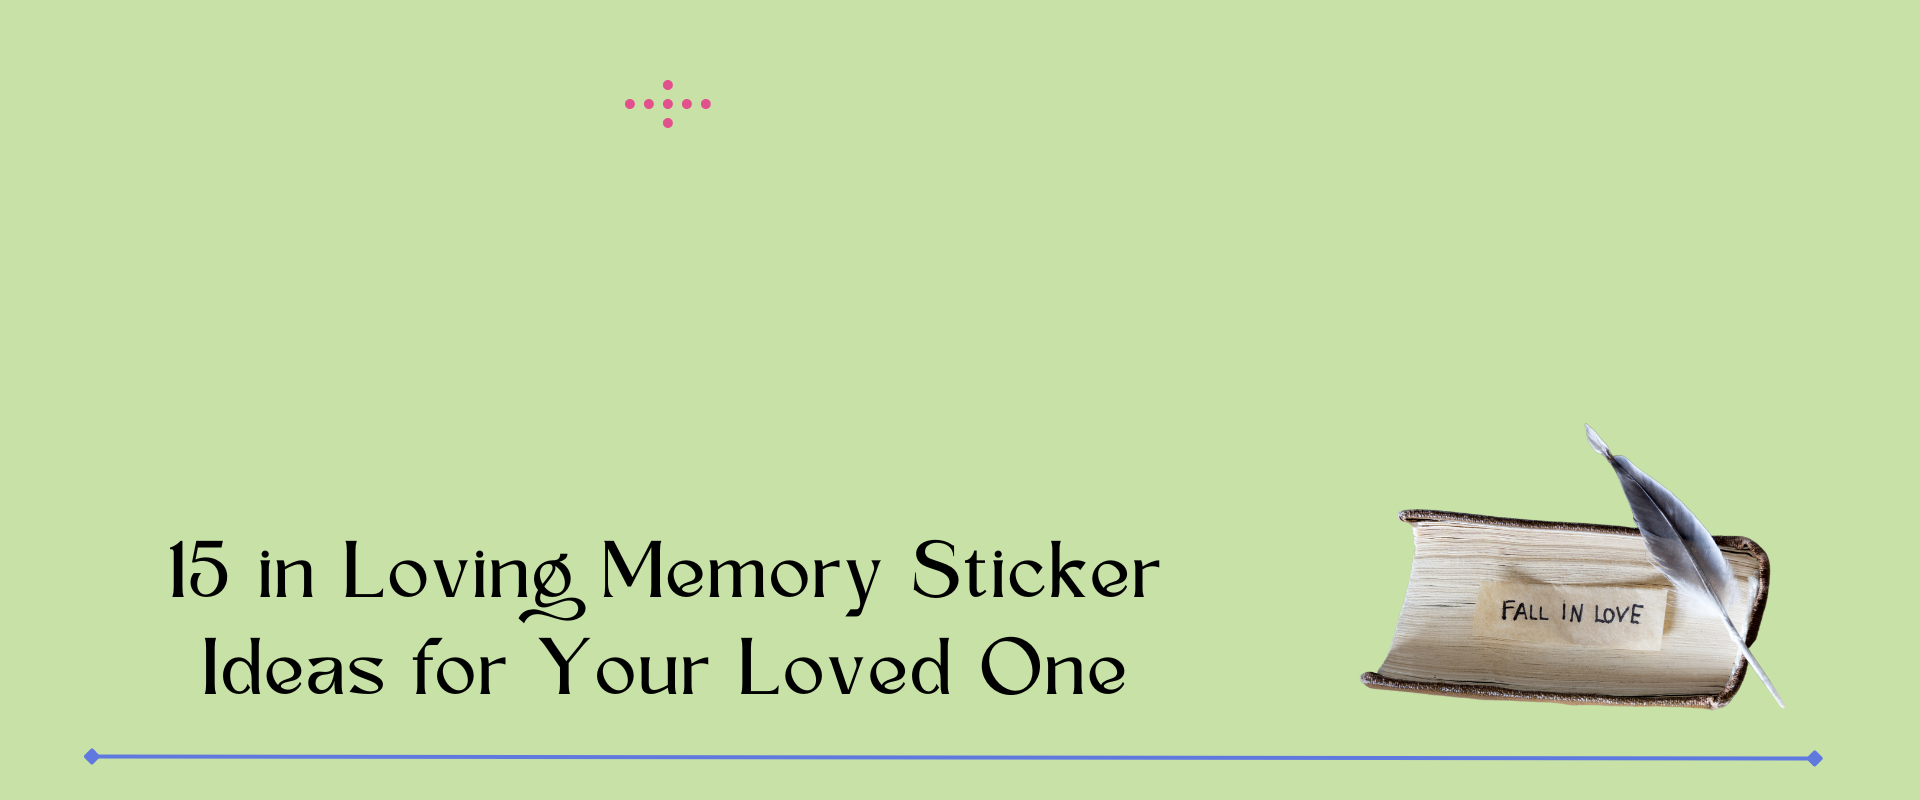 in loving memory sticker ideas